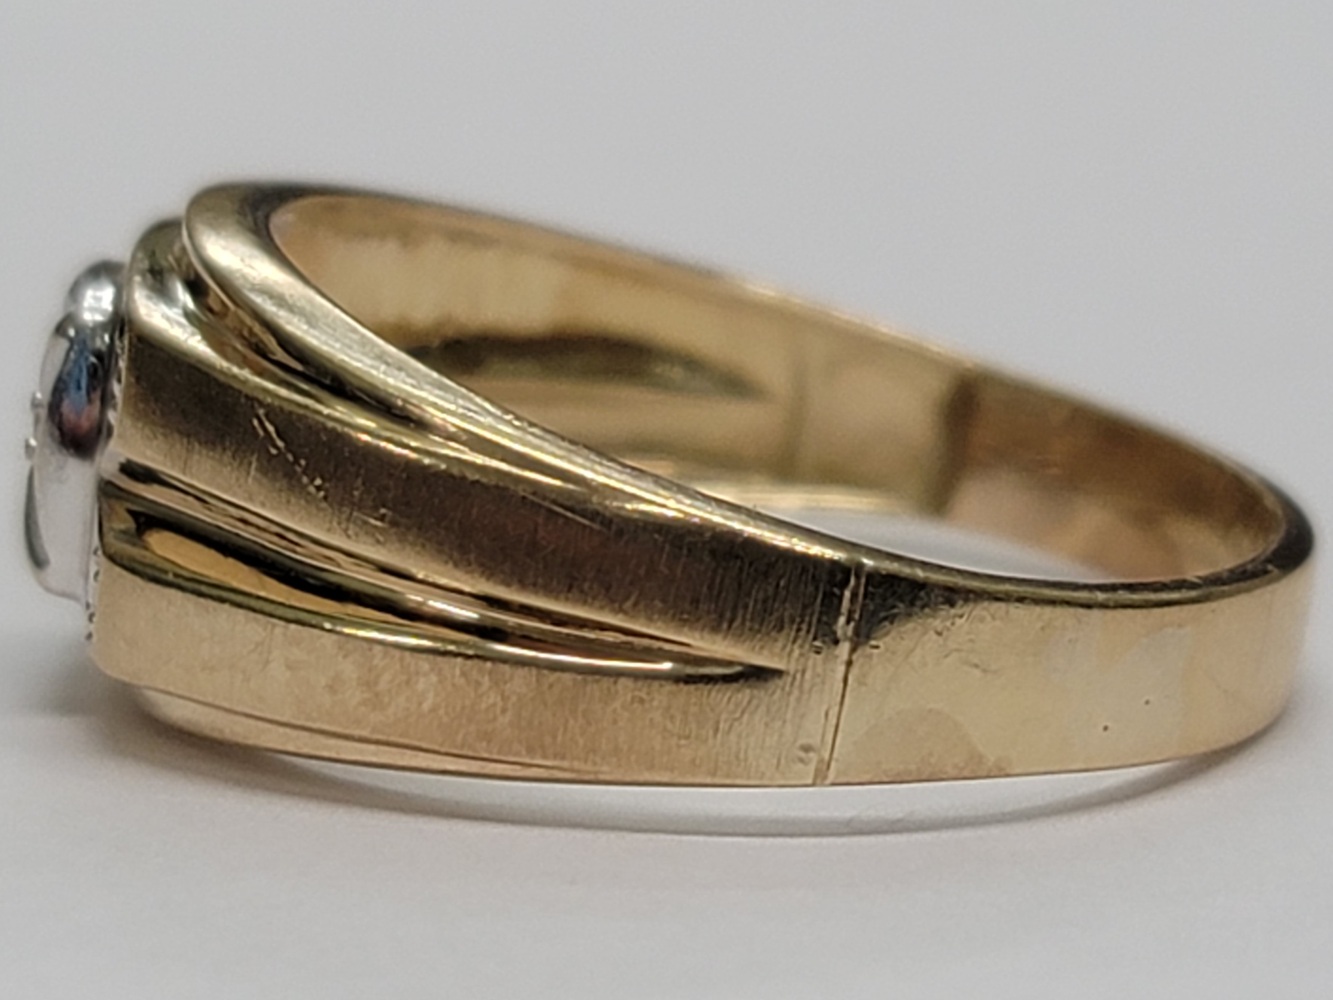 10 Karat Two Tone Gold Band Ring - Size: 12.75